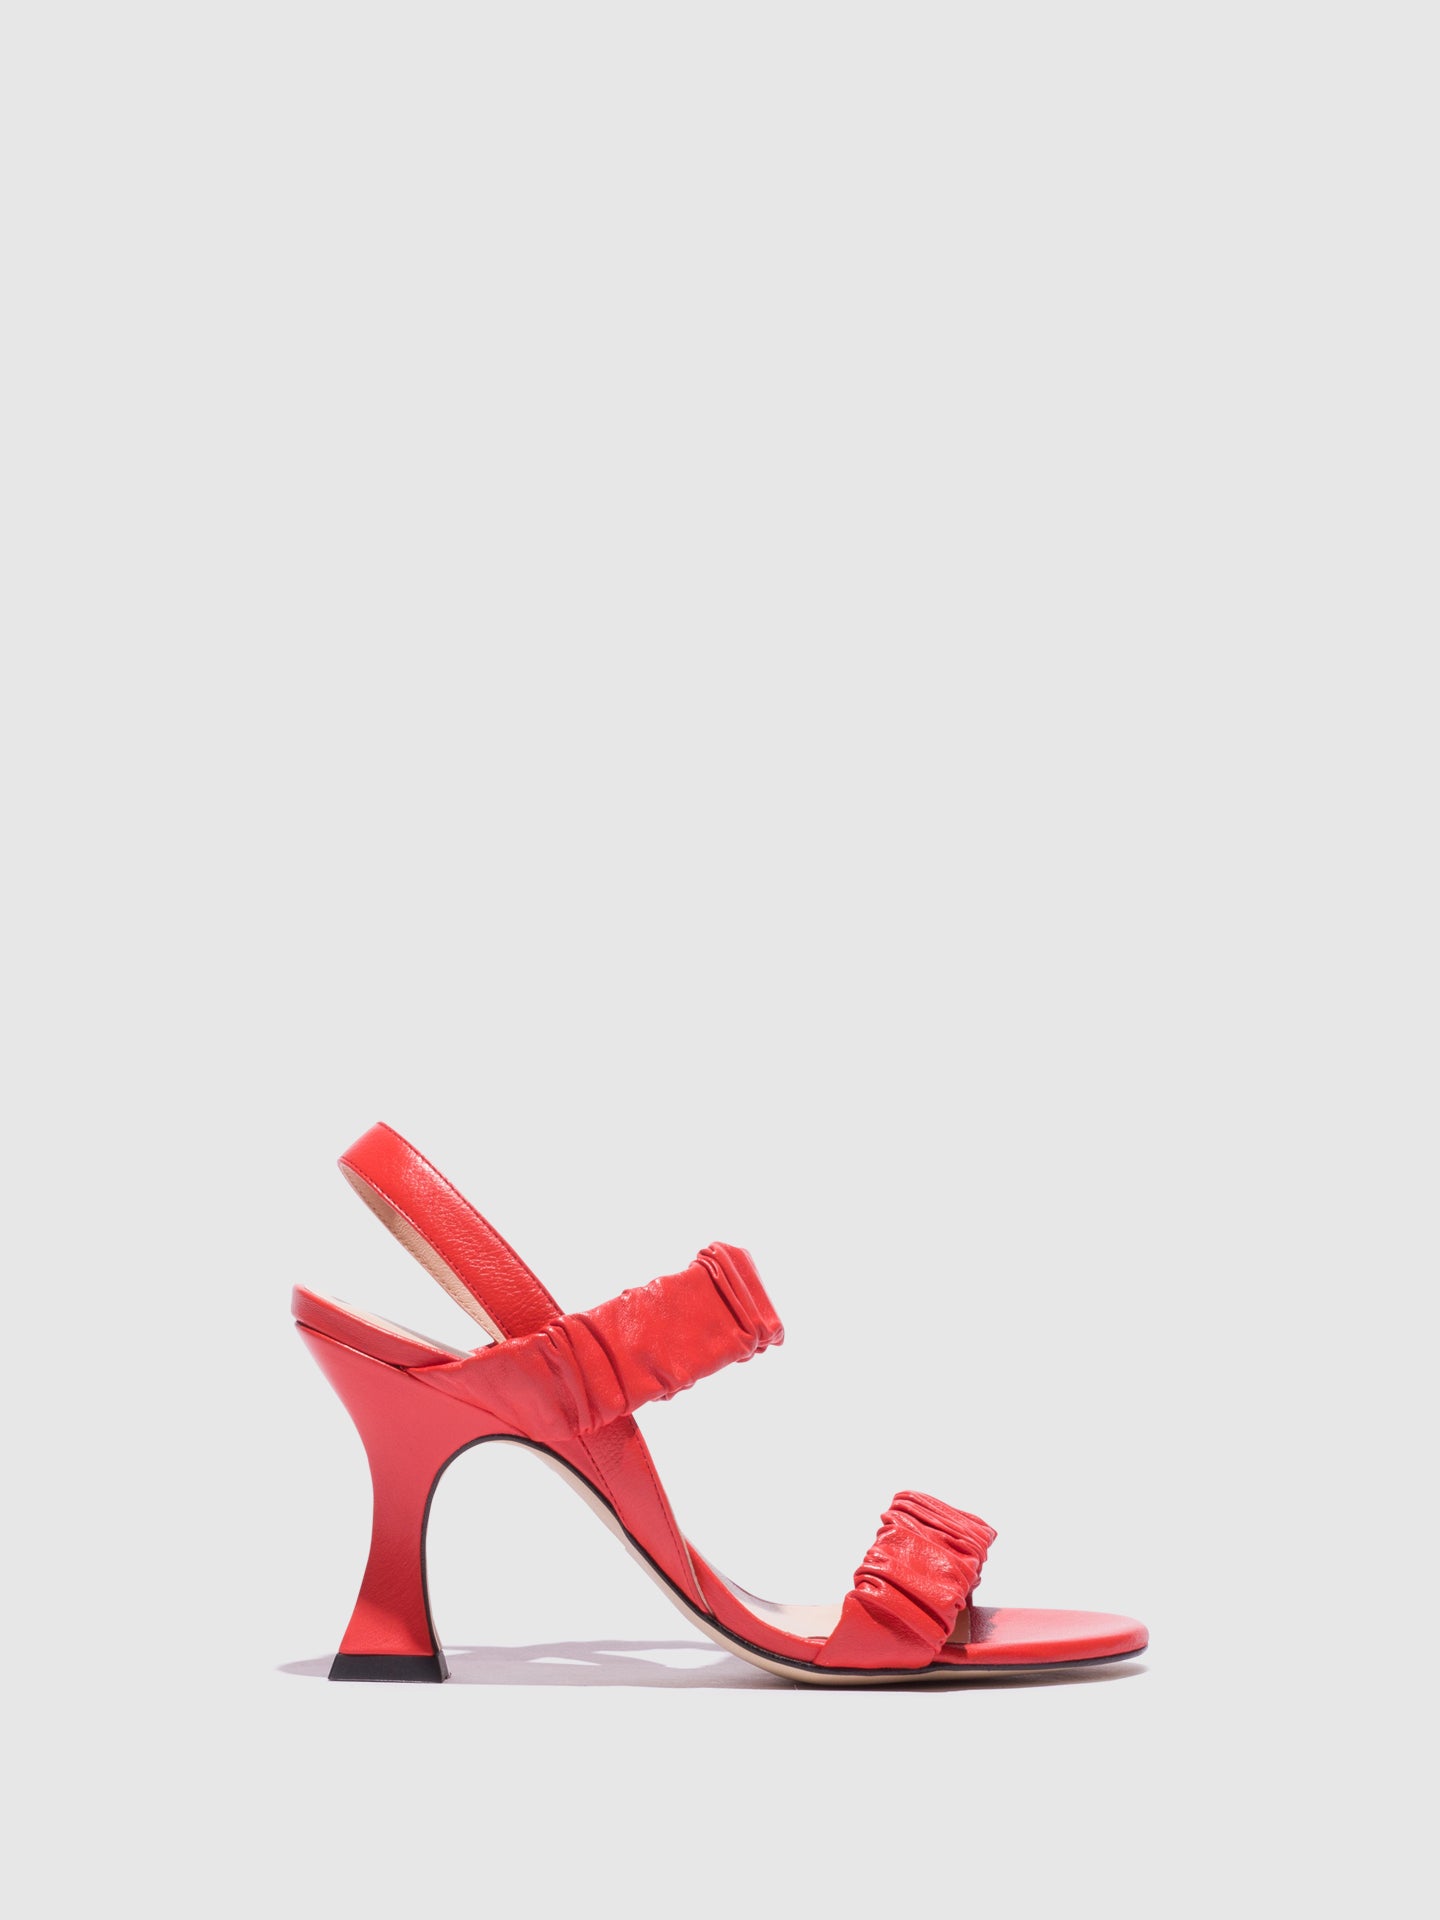 Sofia Costa Red Open Toe Sandals